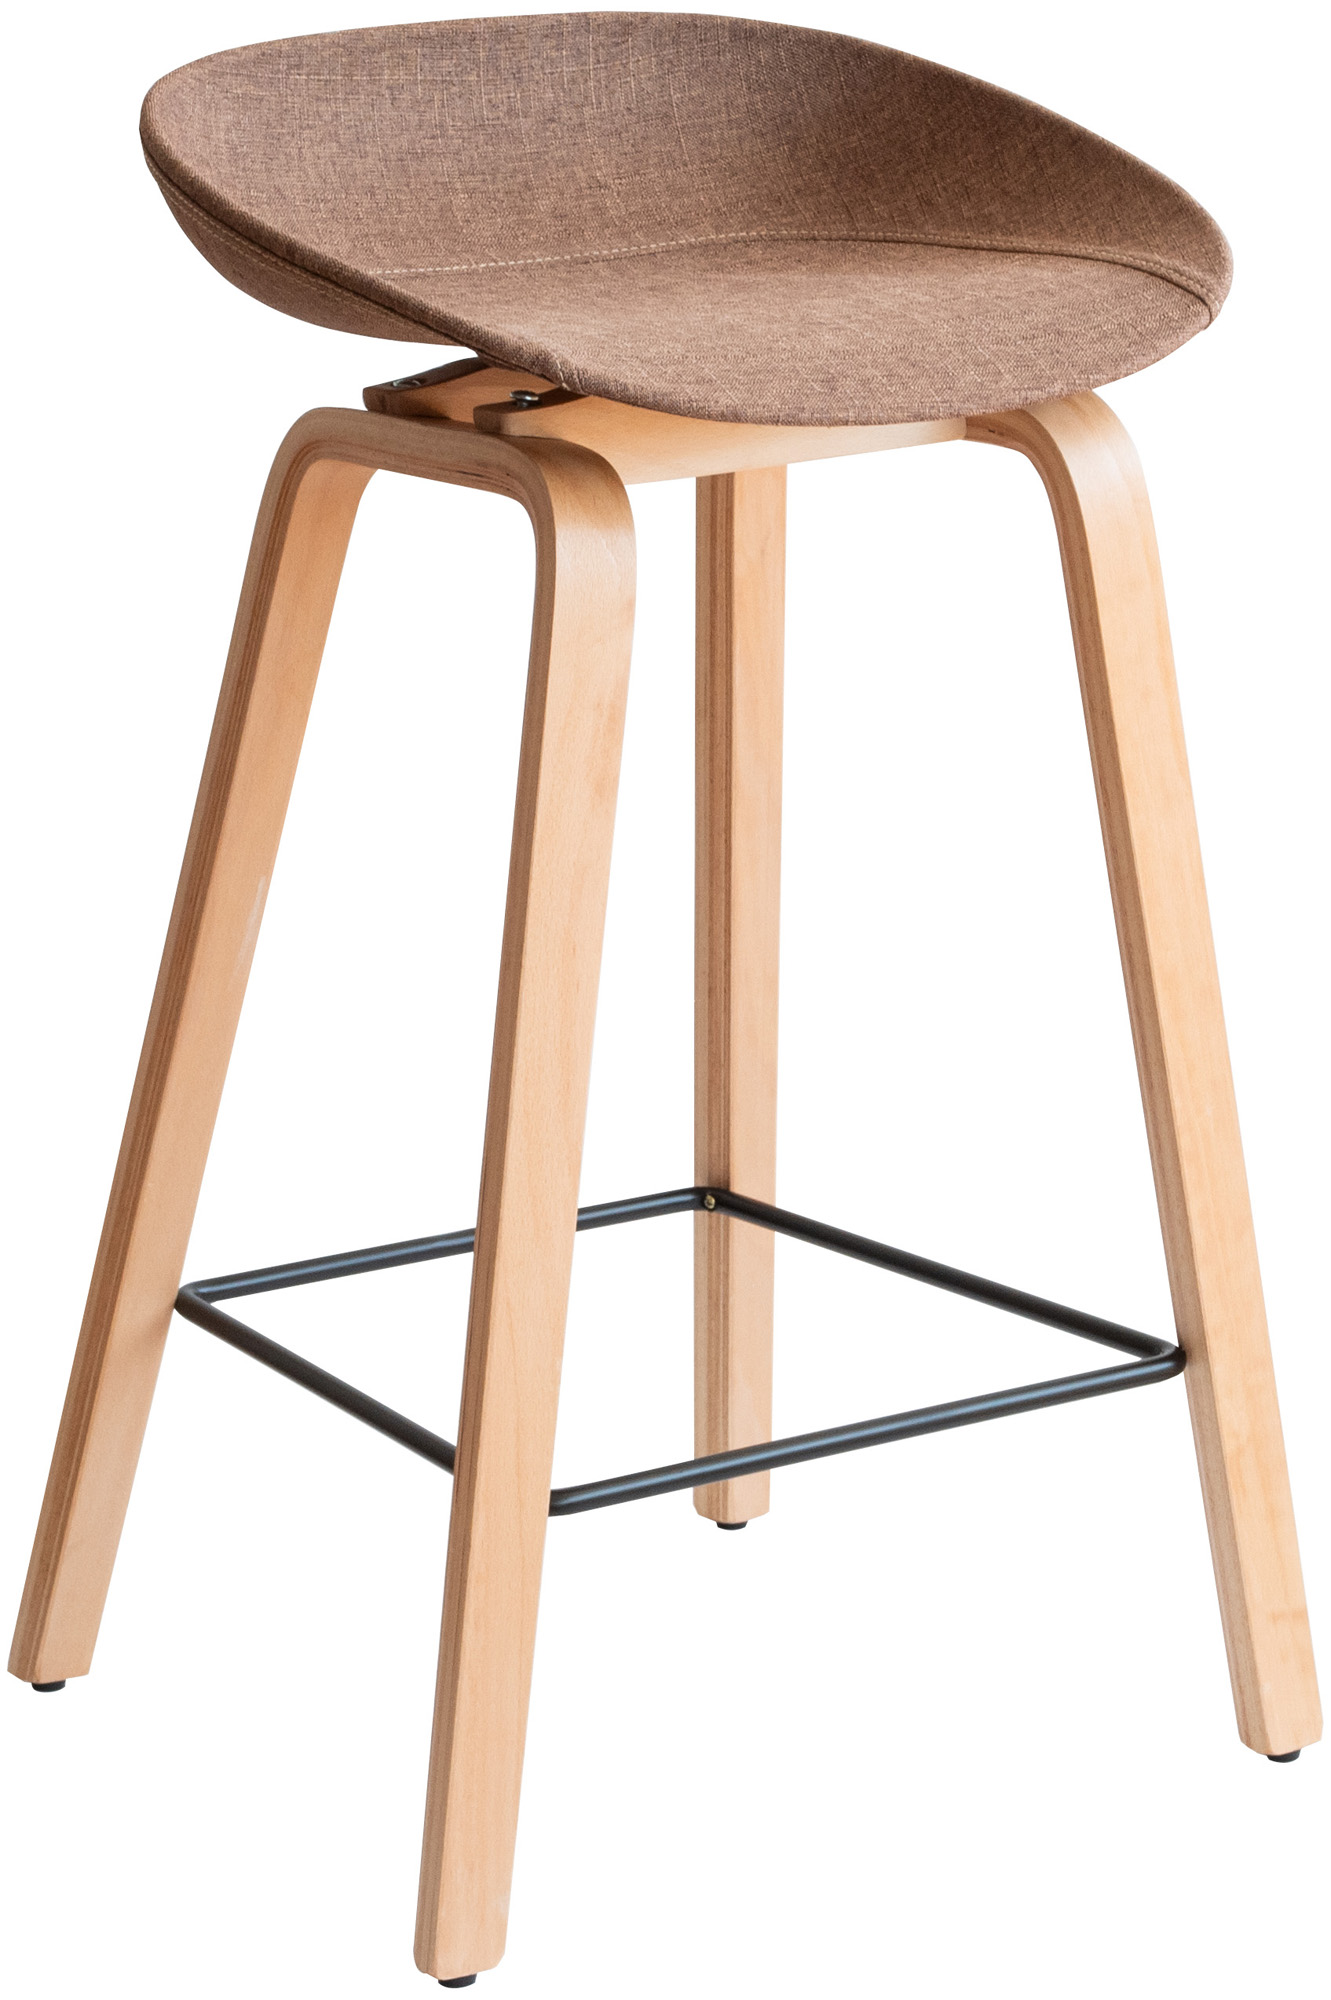 カウンターチェア カウンター椅子 木製 70cm 北欧 カウンタースツール バーチェア ハイチェア ...